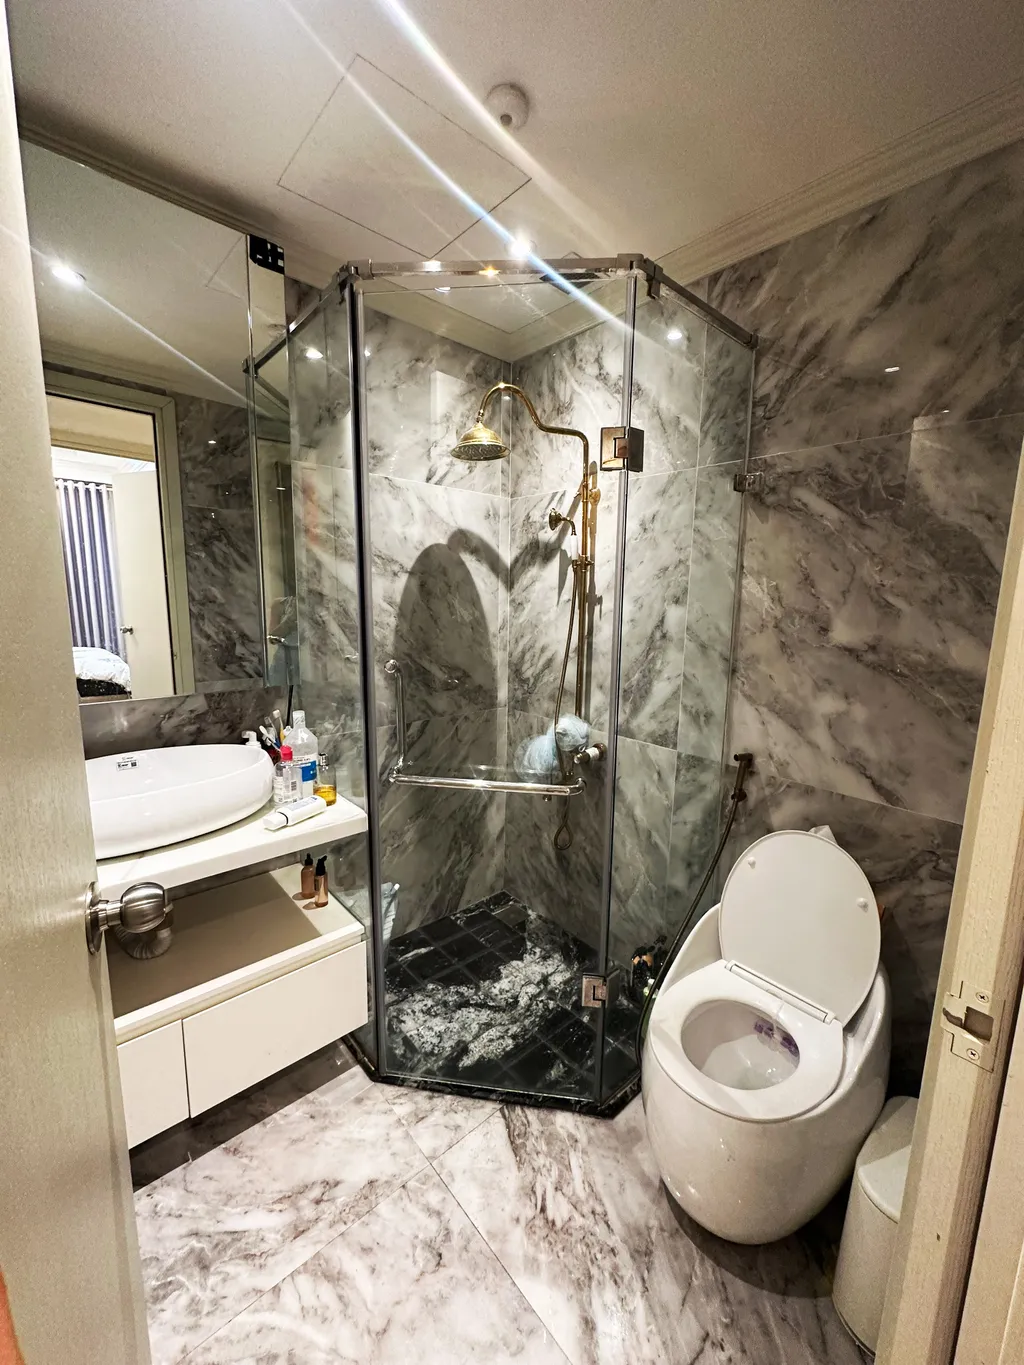  Phòng tắm - Căn hộ RiverGate Quận 4 - Phong cách Neo Classic 